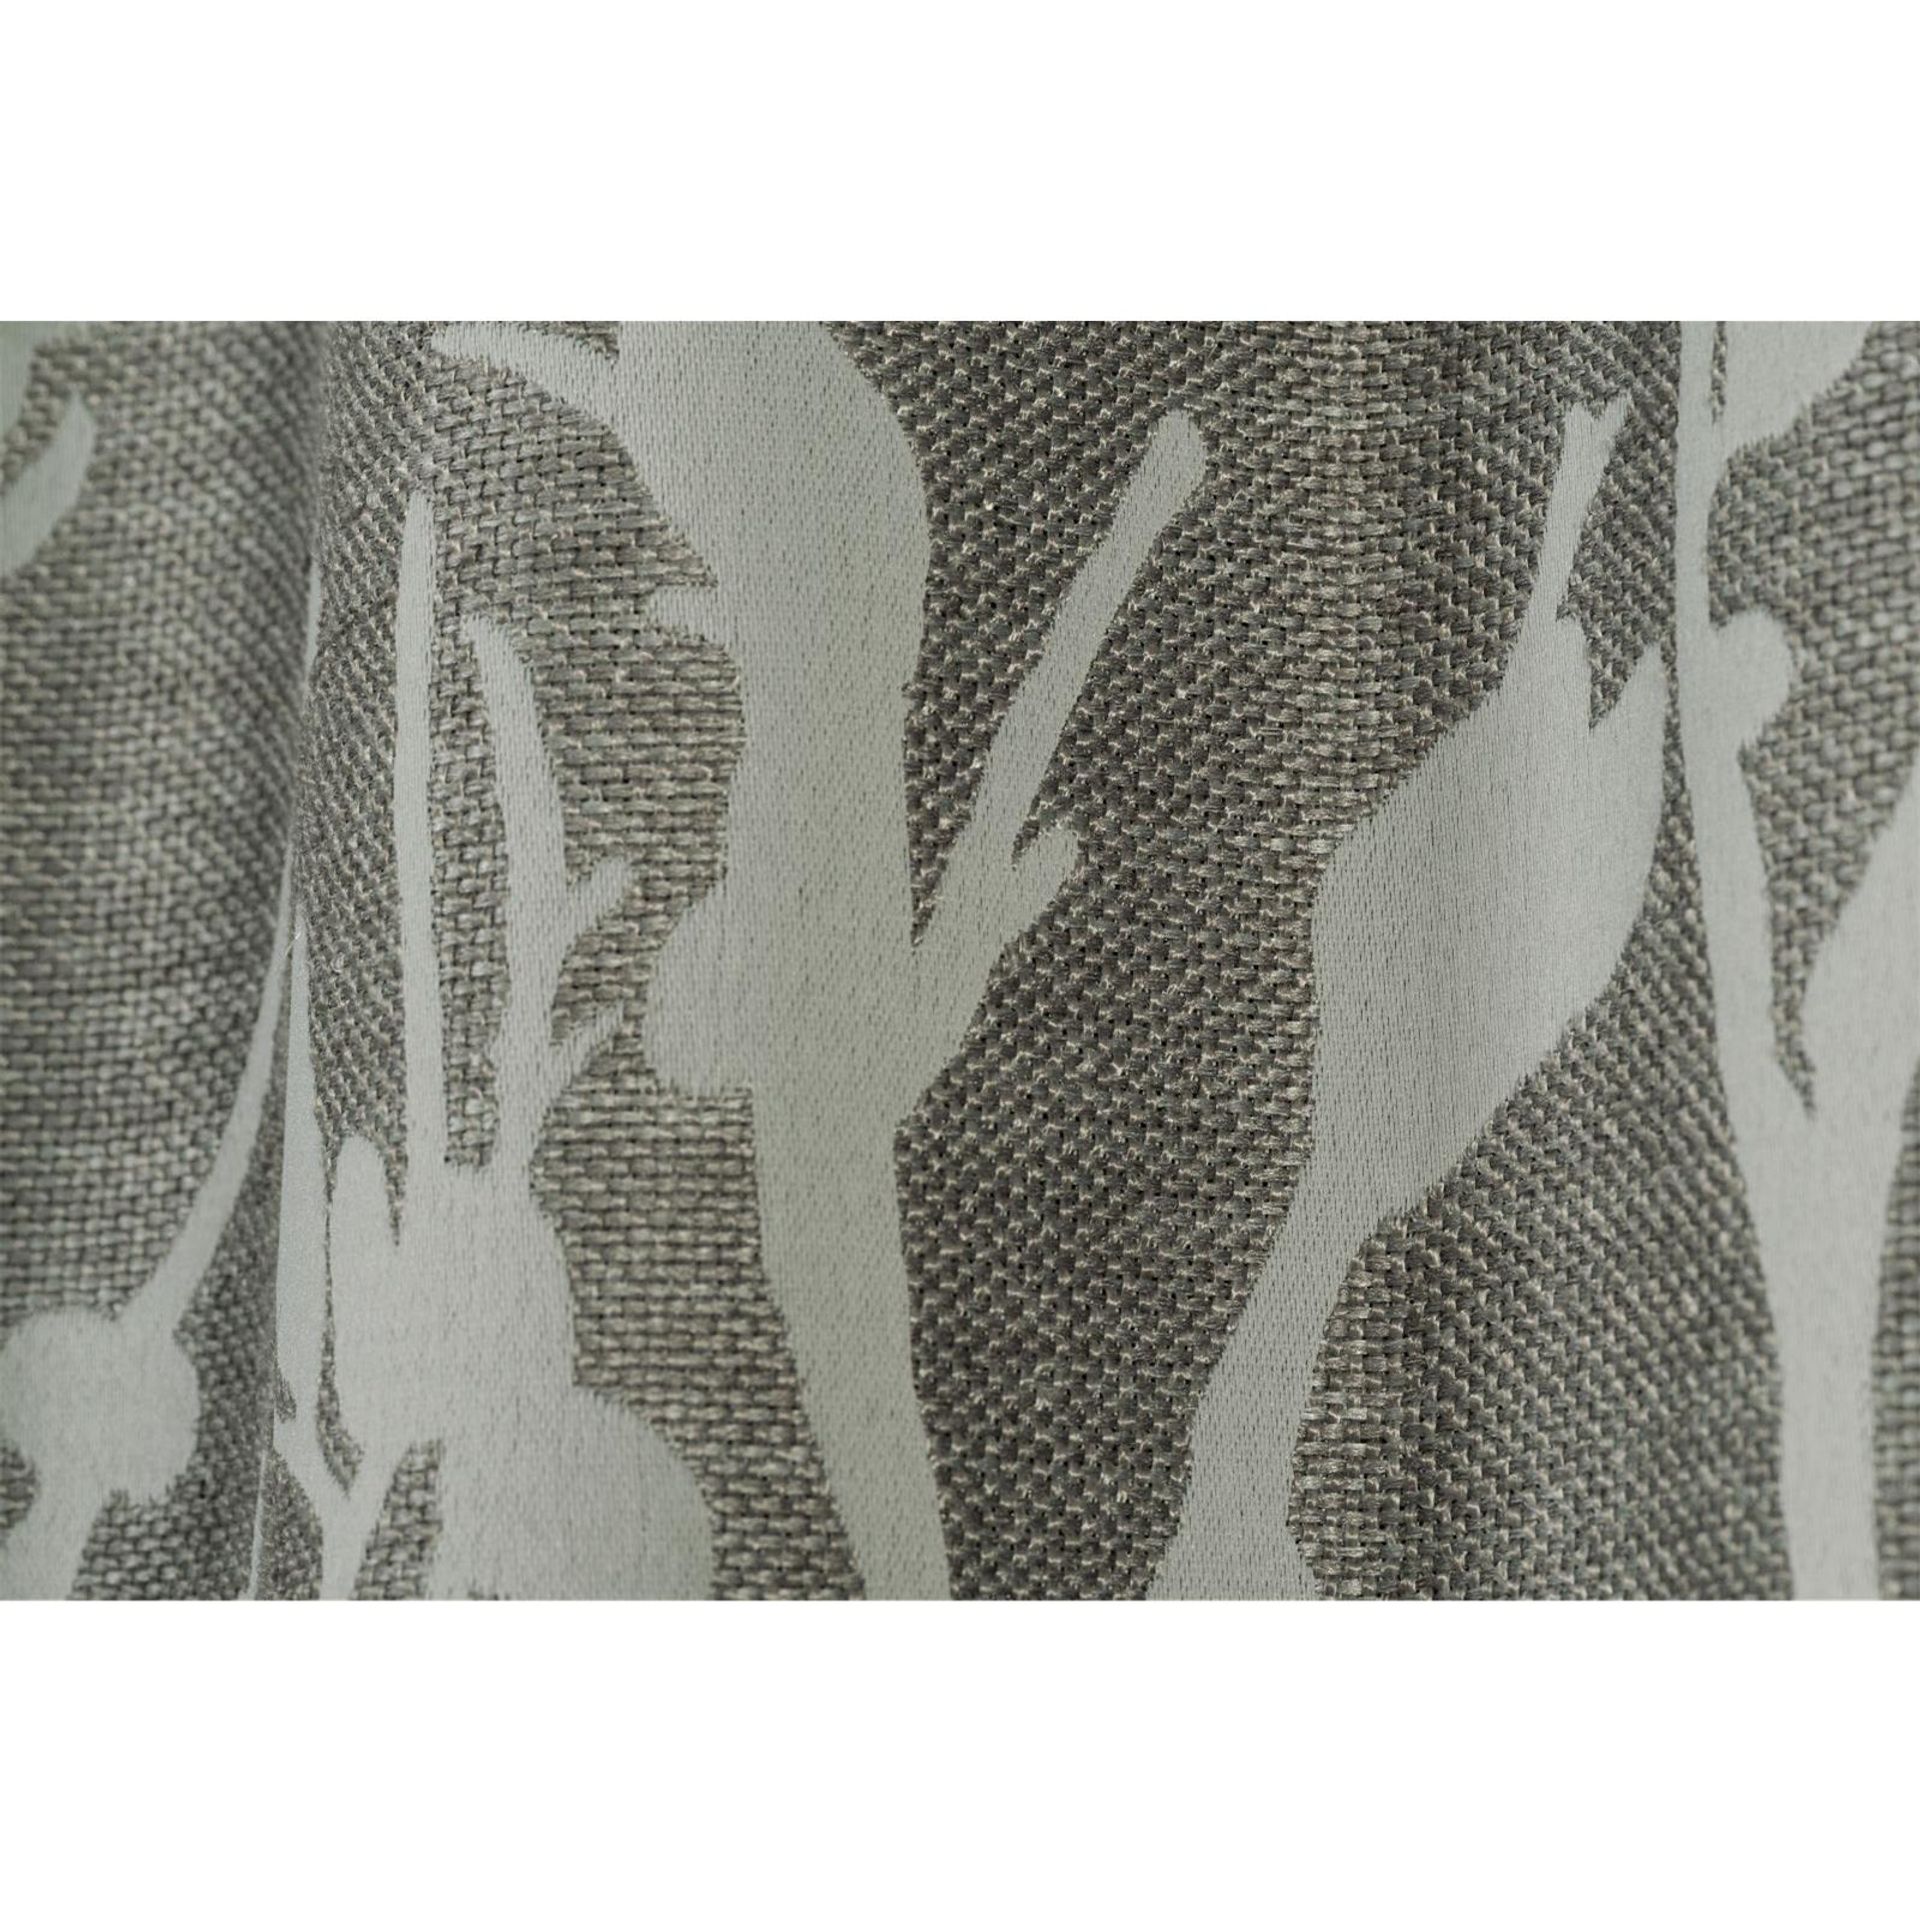 Fertigdeko mit Schlaufenband FD Secret Garden 07 grau-silber-weiß B:135cm L:255cm